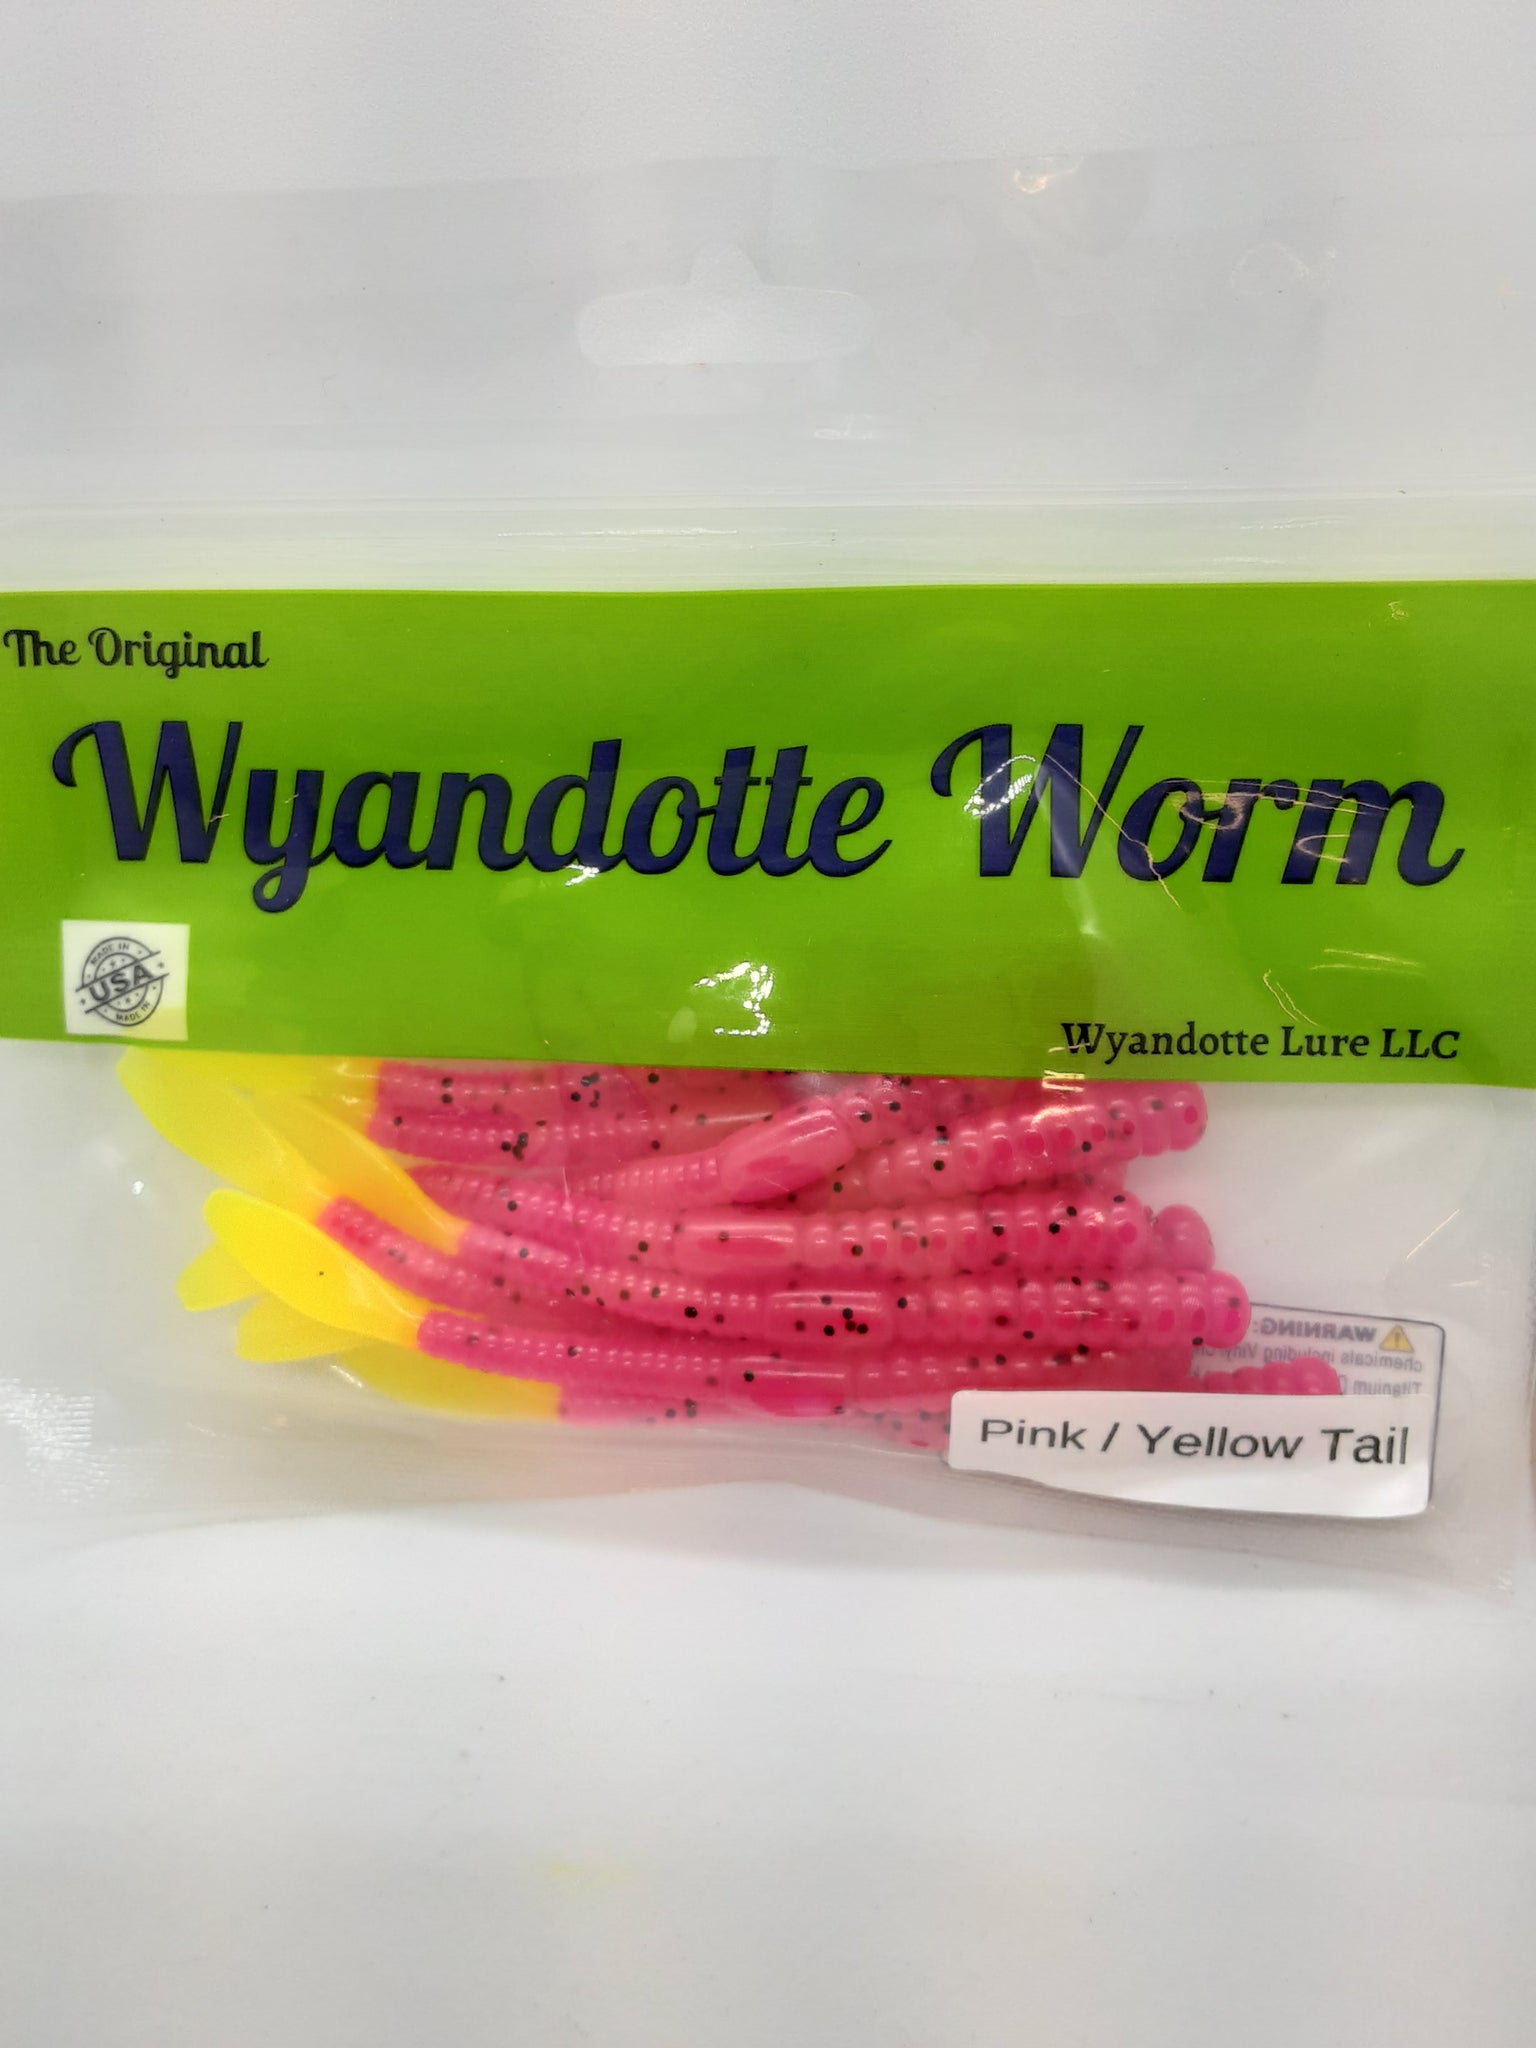 Wyandotte Lure – Dip Net Bait & Tackle